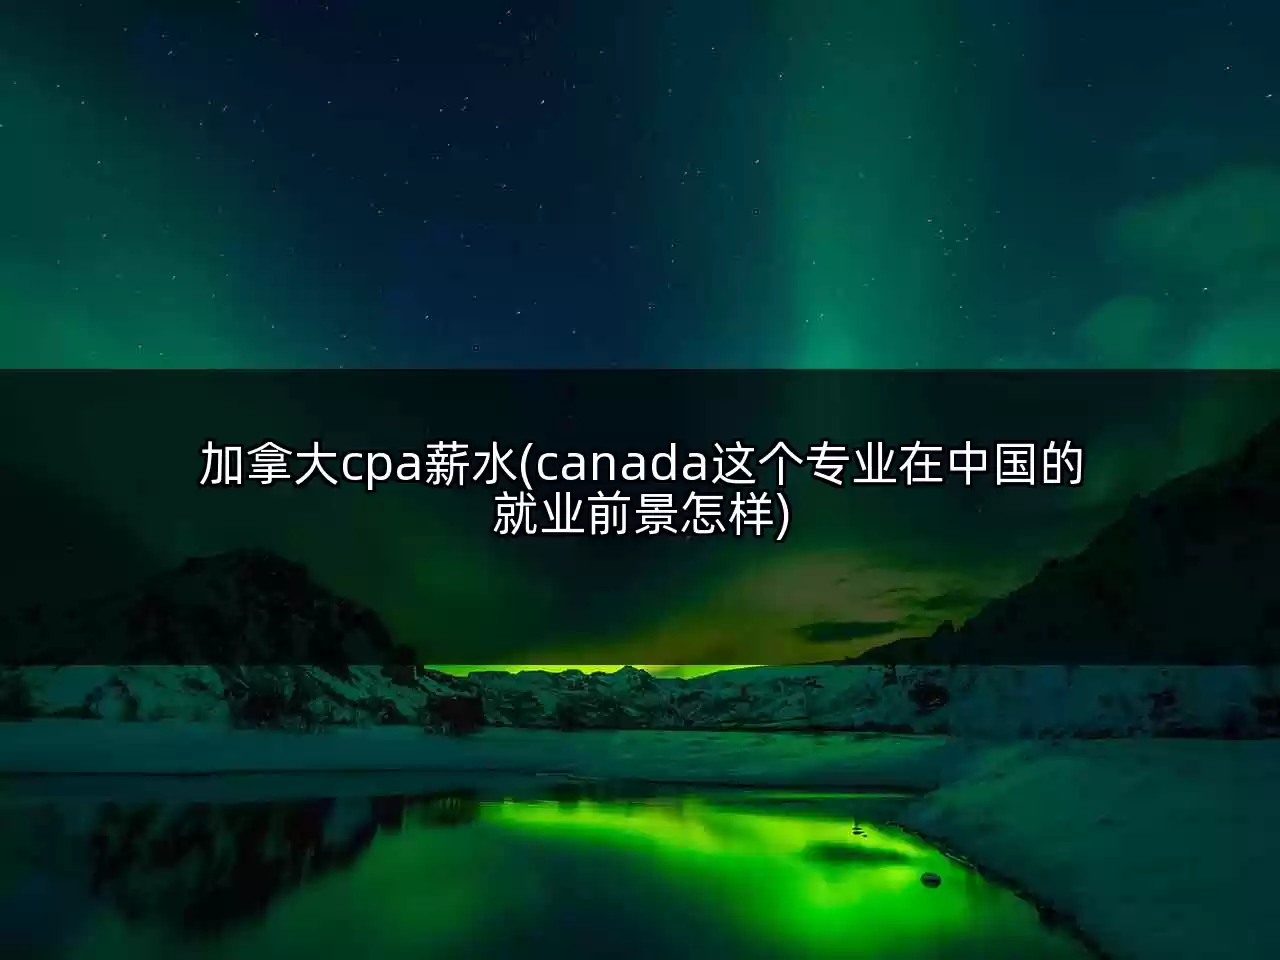 加拿大cpa薪水(canada这个专业在中国的就业前景怎样)